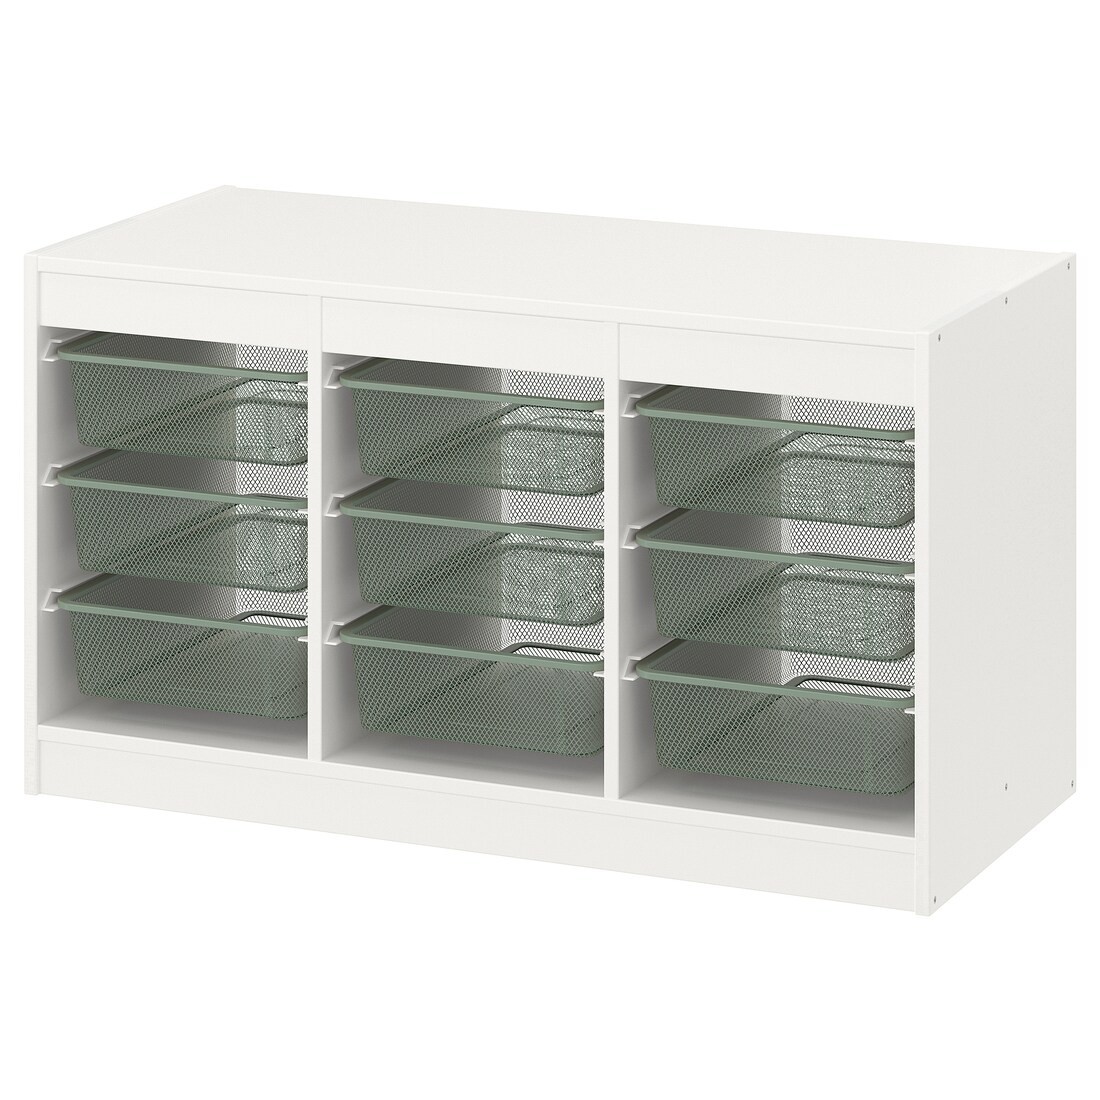 IKEA TROFAST ТРУФАСТ Комбінація для зберігання + контейнери, білий / світлий зелено-сірий, 99x44x56 см 89480322 894.803.22